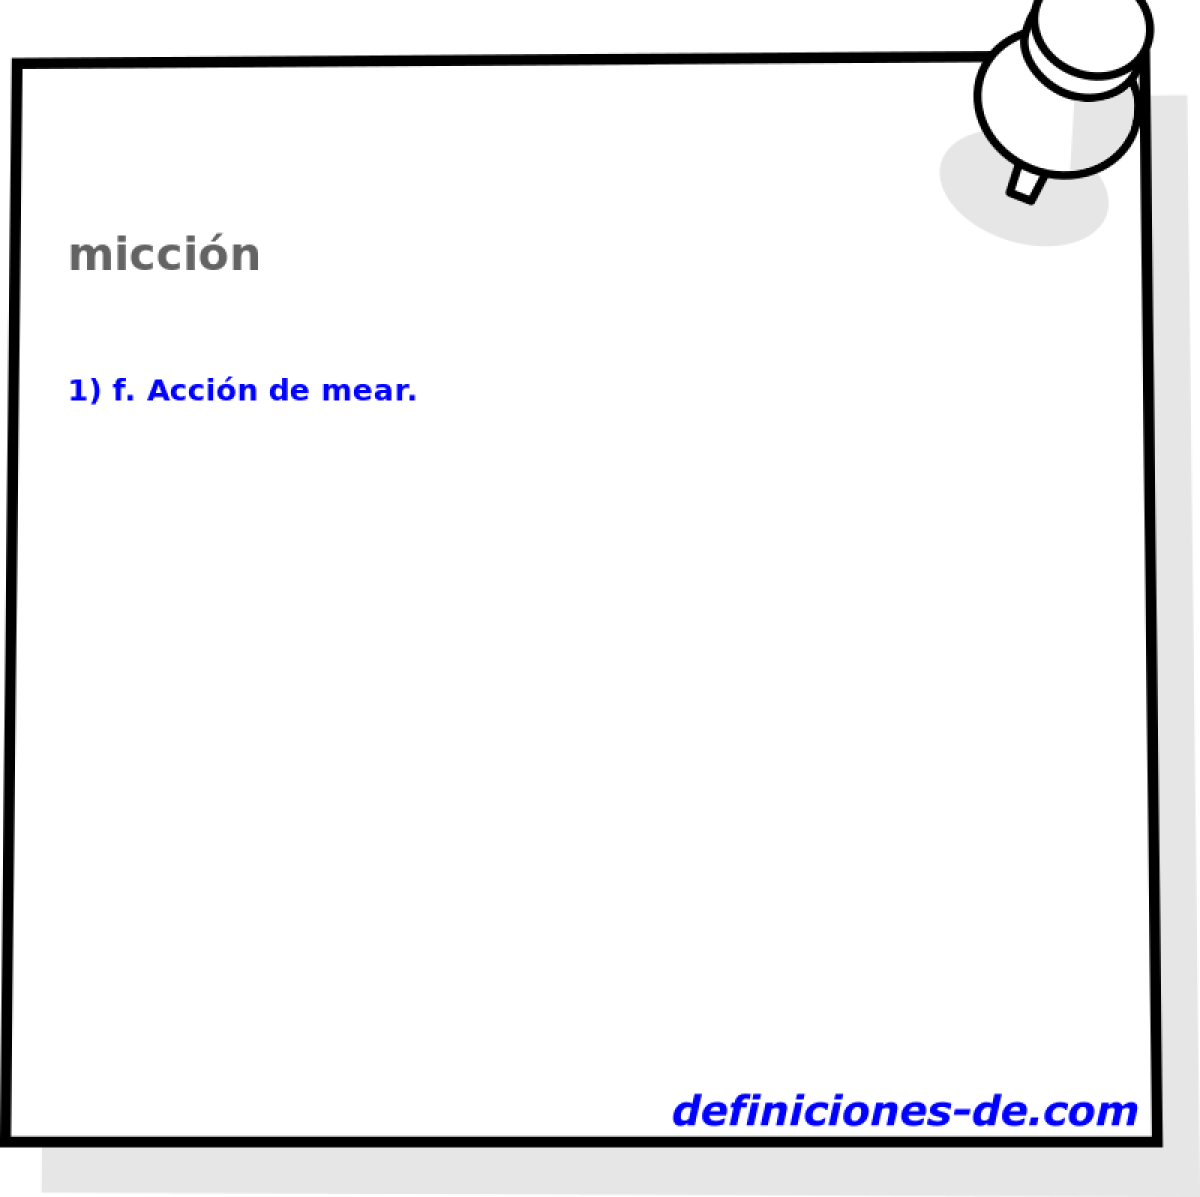 miccin 